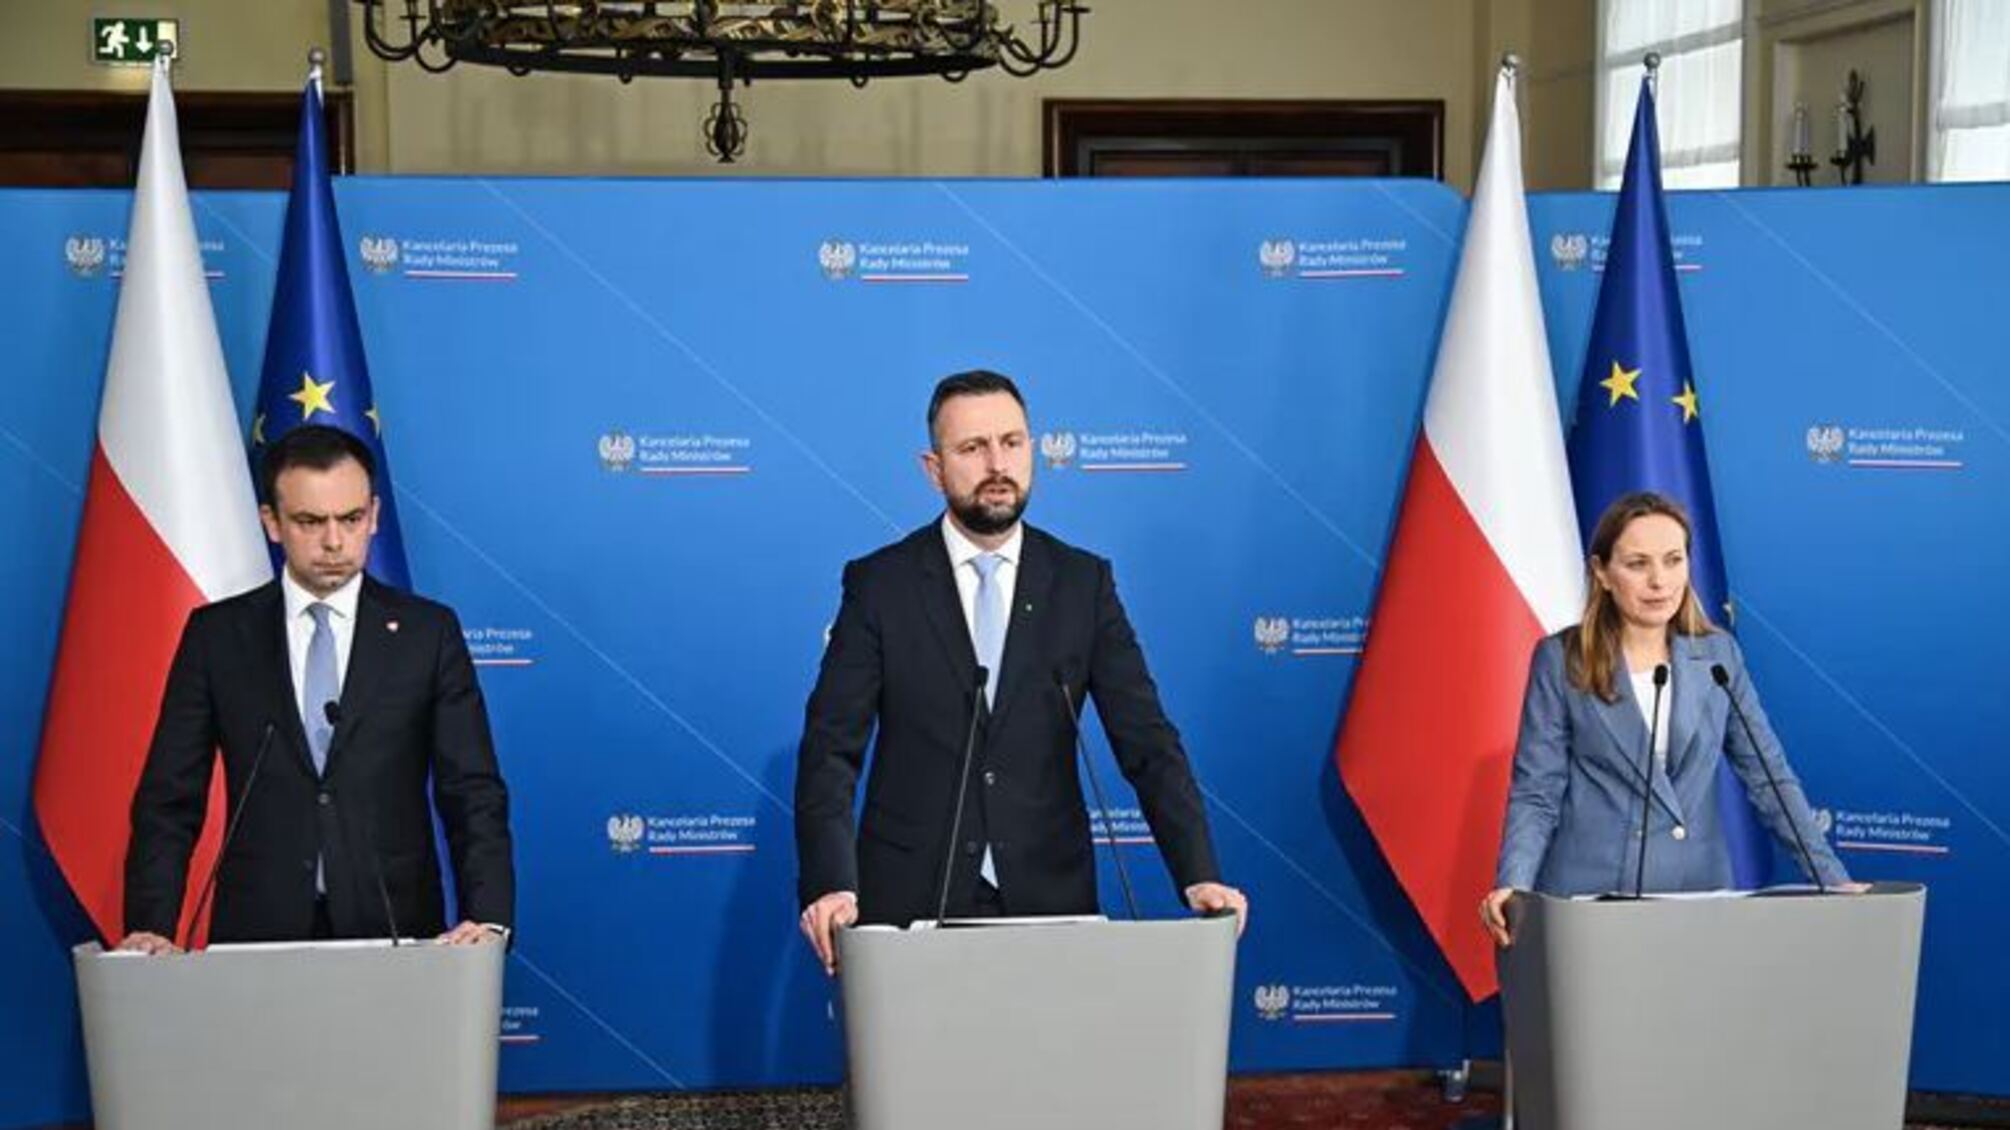 Польское правительство одобрило изменения в законодательстве по защите украинцев, убежавших от войны: подробности 